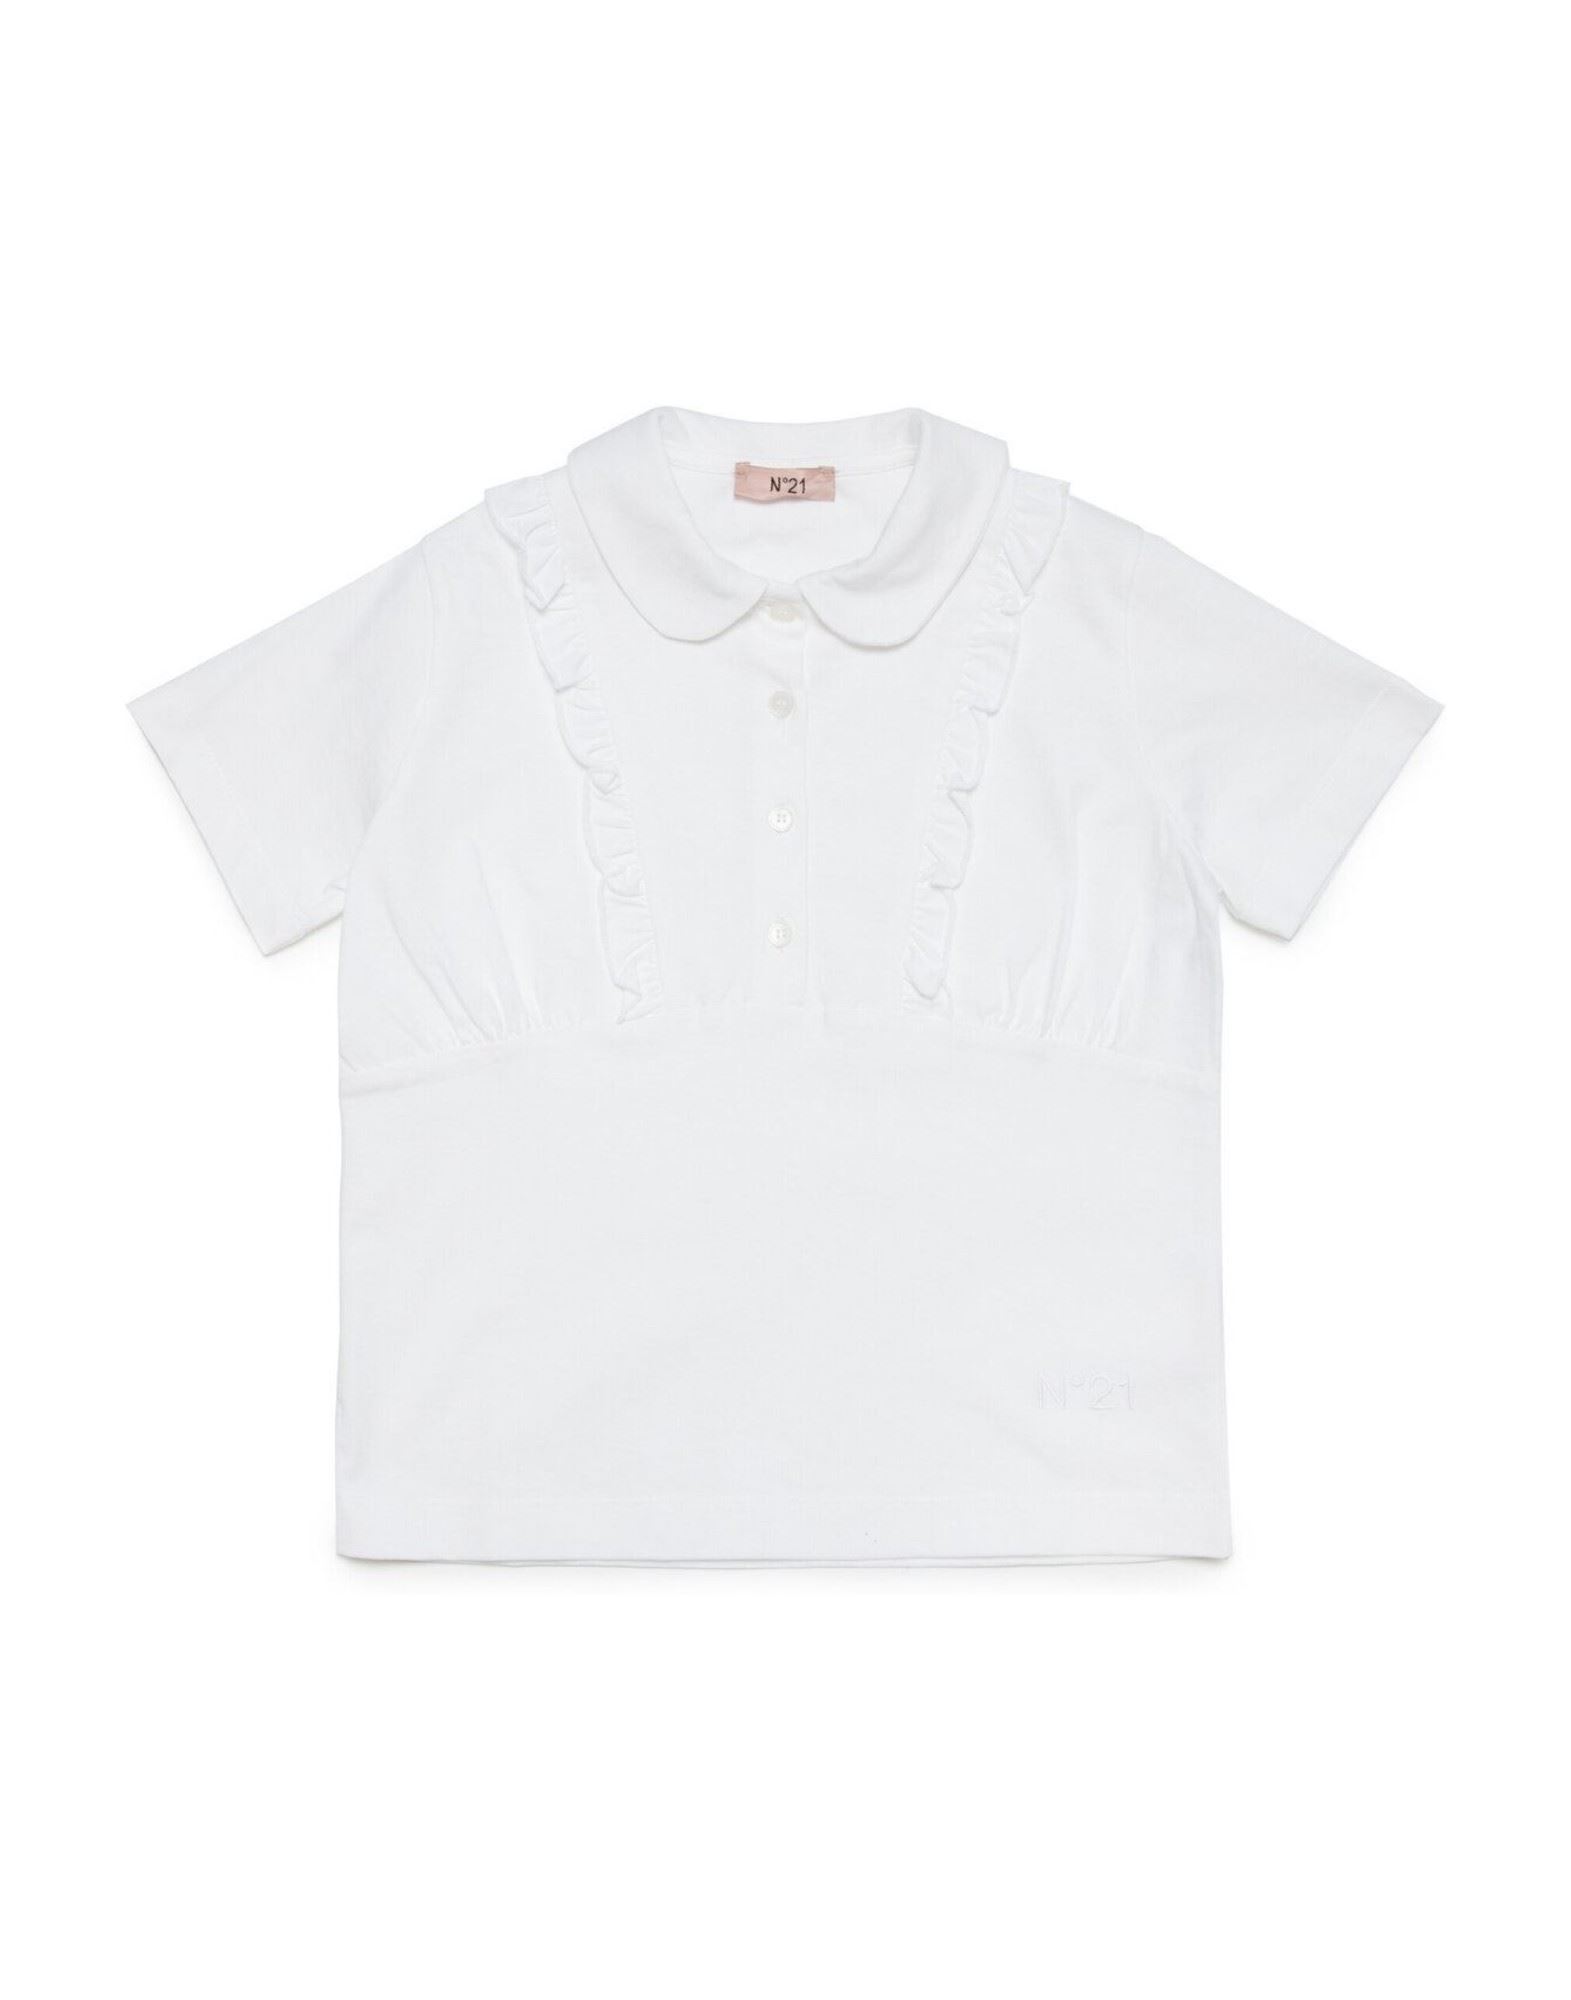 N°21 T-shirts Kinder Weiß von N°21